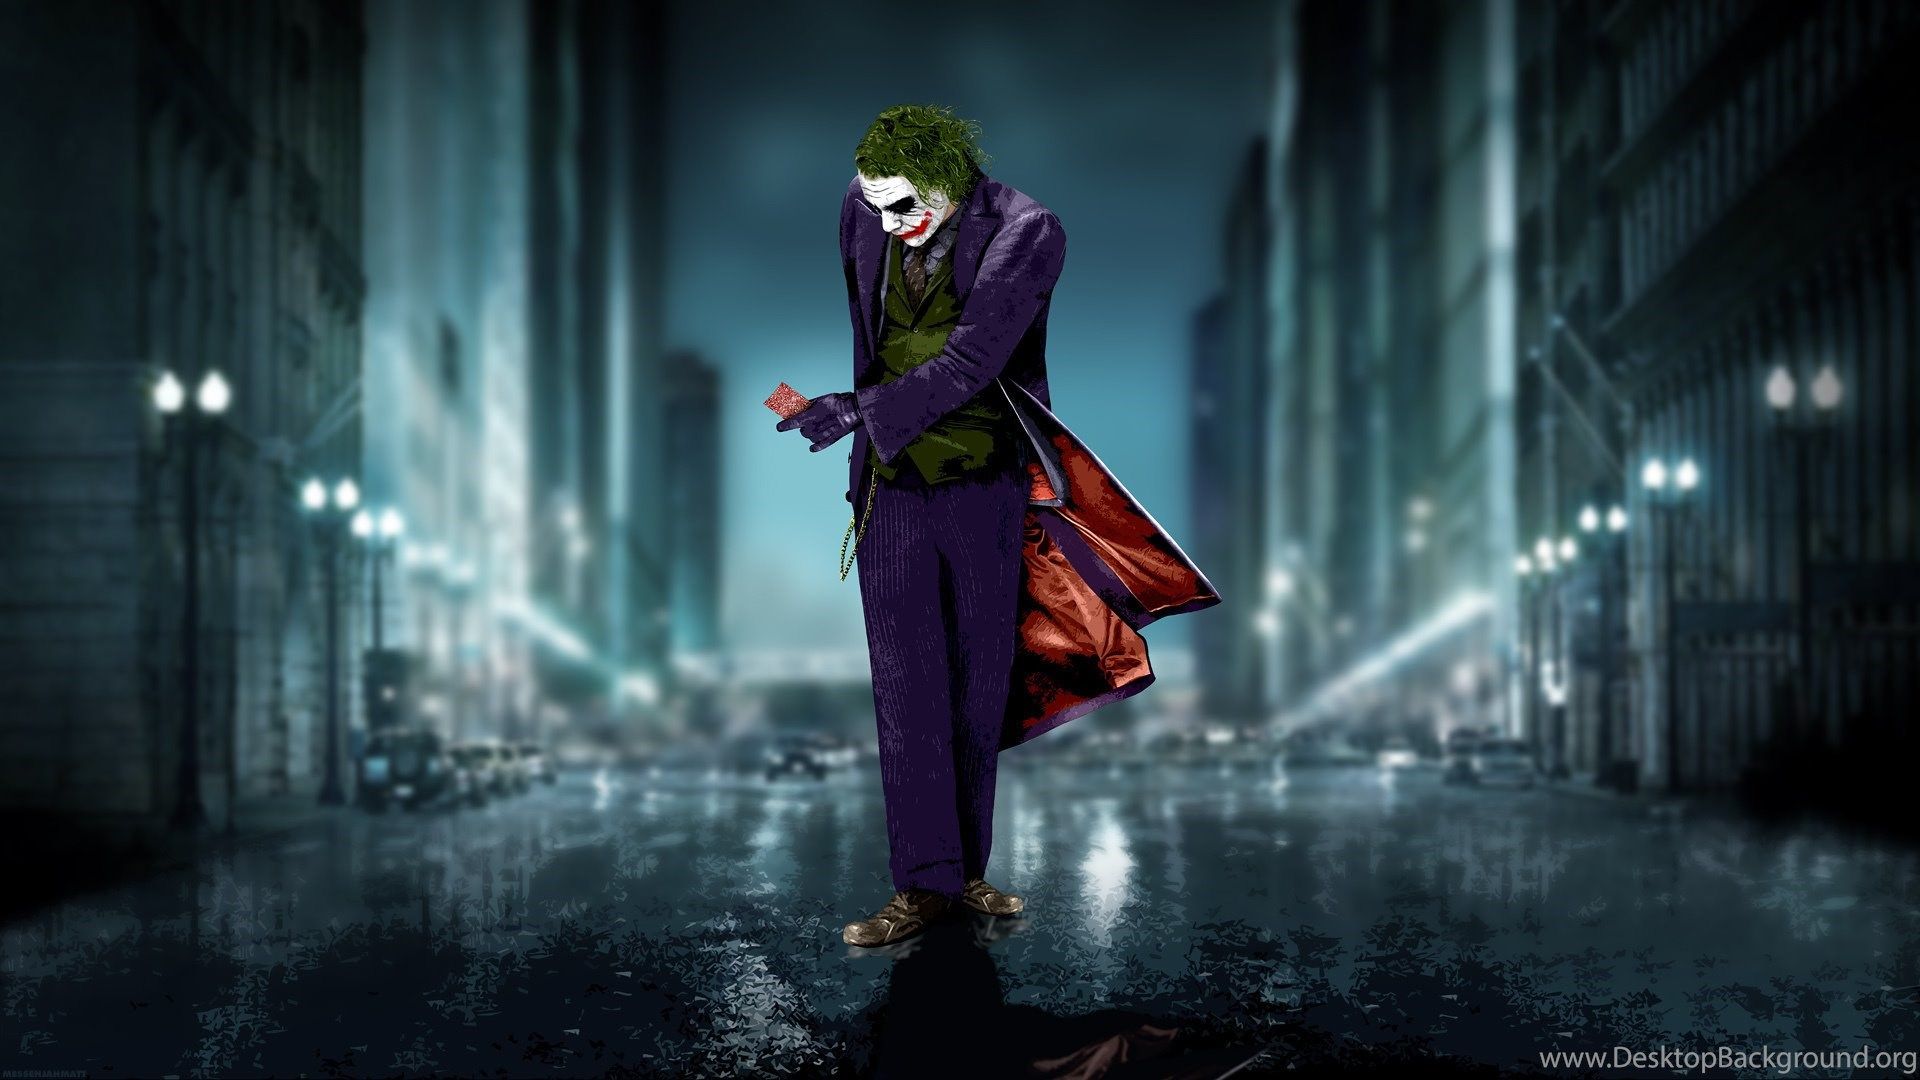 Joker Poster Wallpaper DreamLoveWallpaper Desktop Background